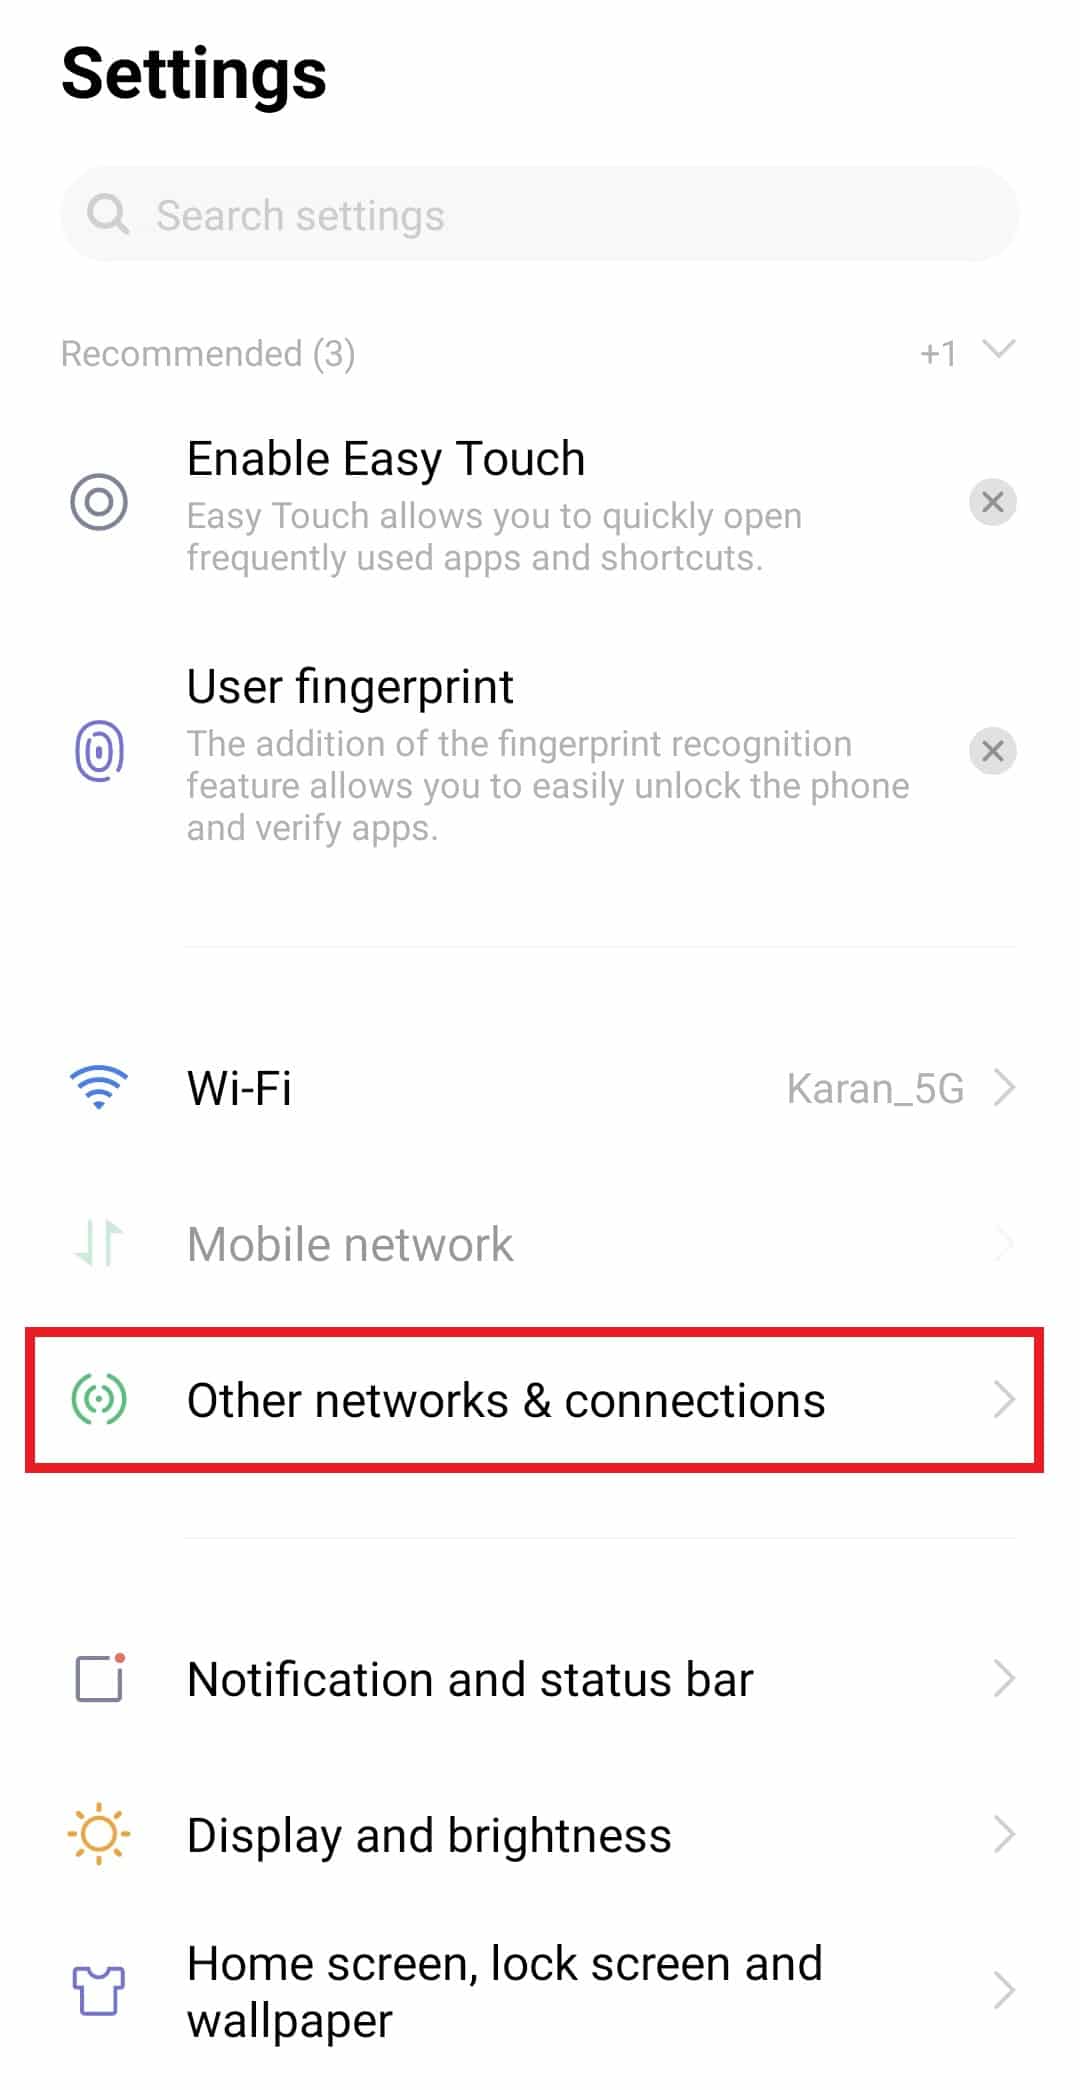 Lancer Autres réseaux et connexions